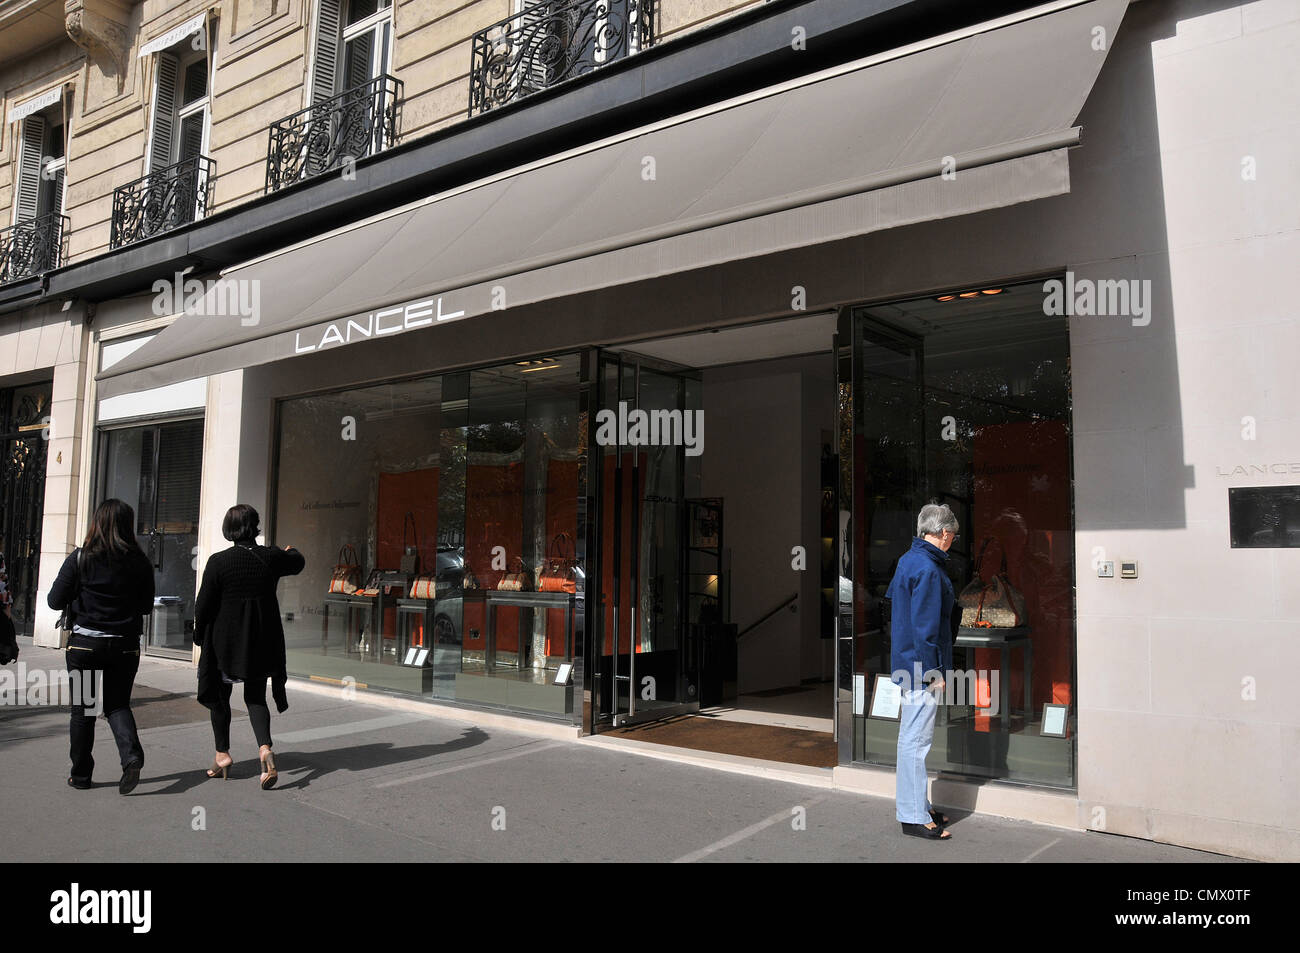 Lancel boutique Paris France Stock Photo